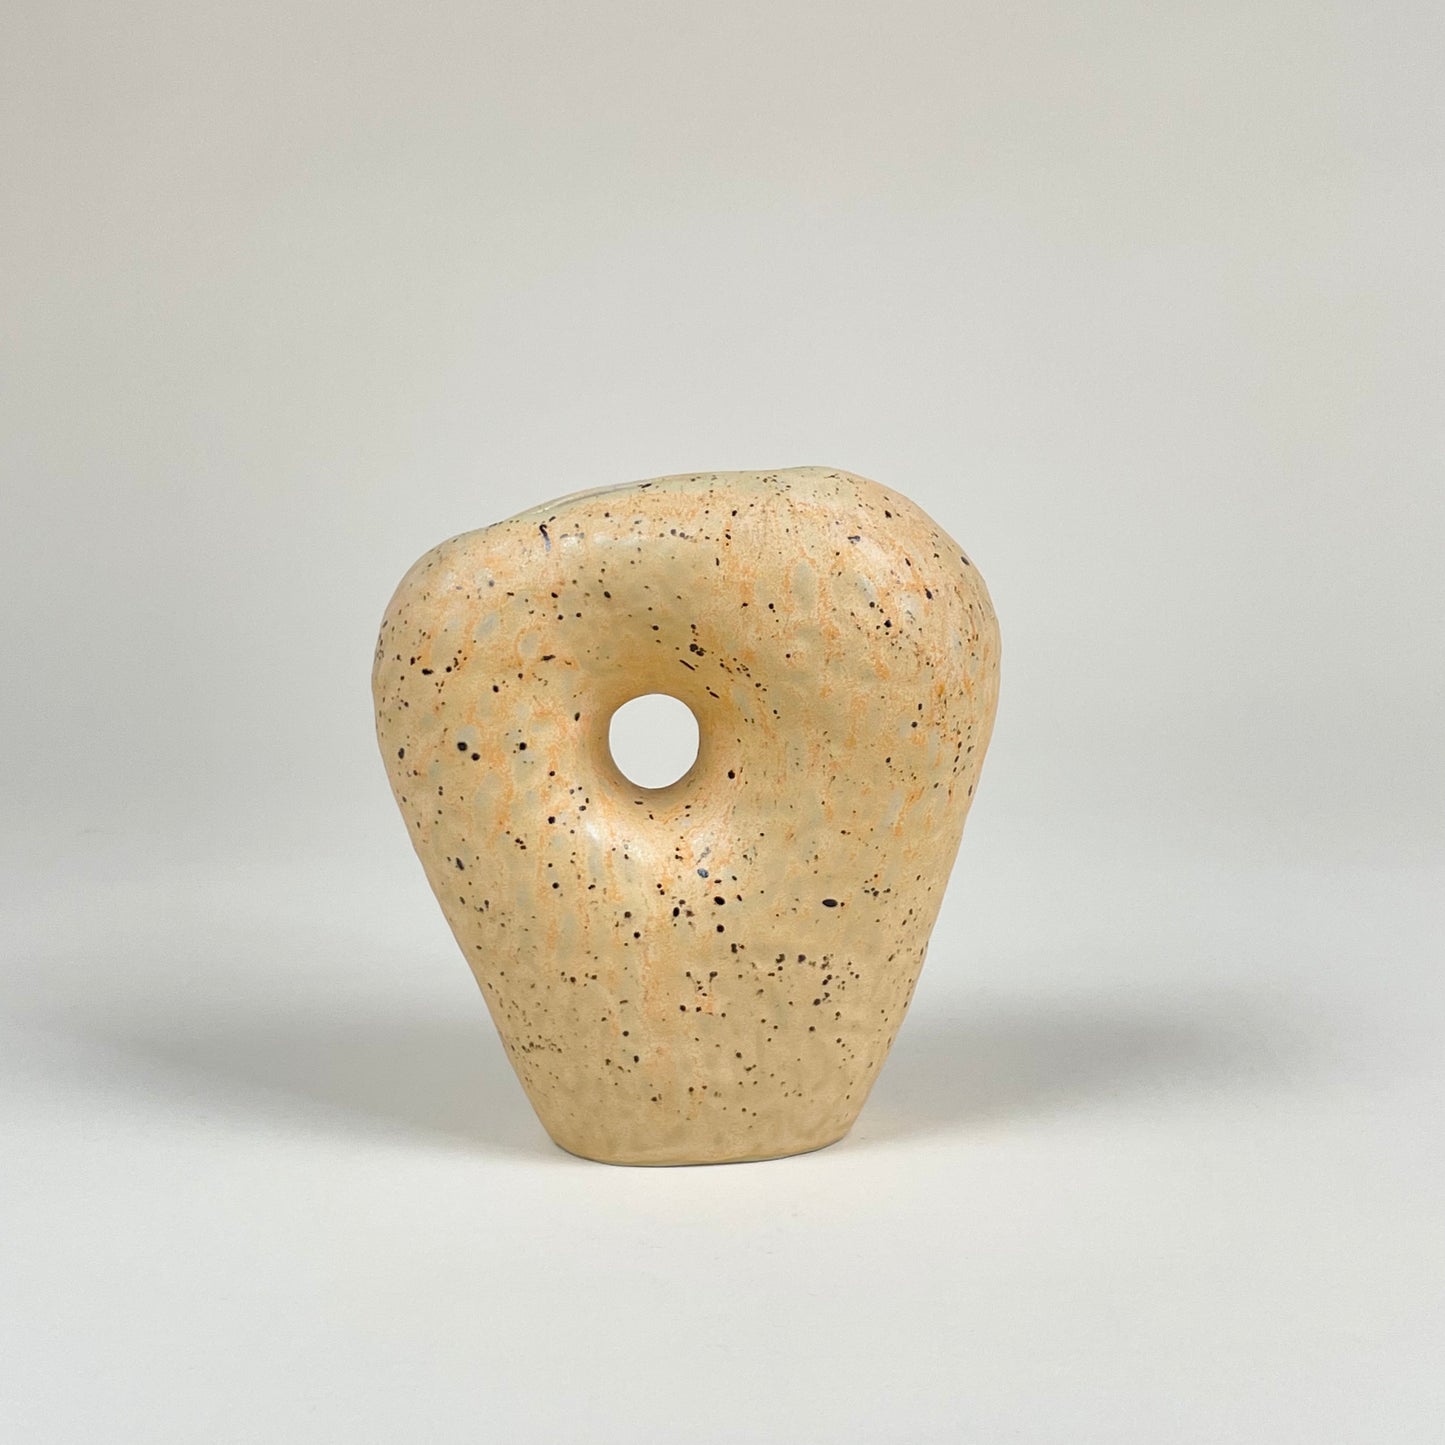 Orange ceramic vase with black speckles by Malwina Kleparska